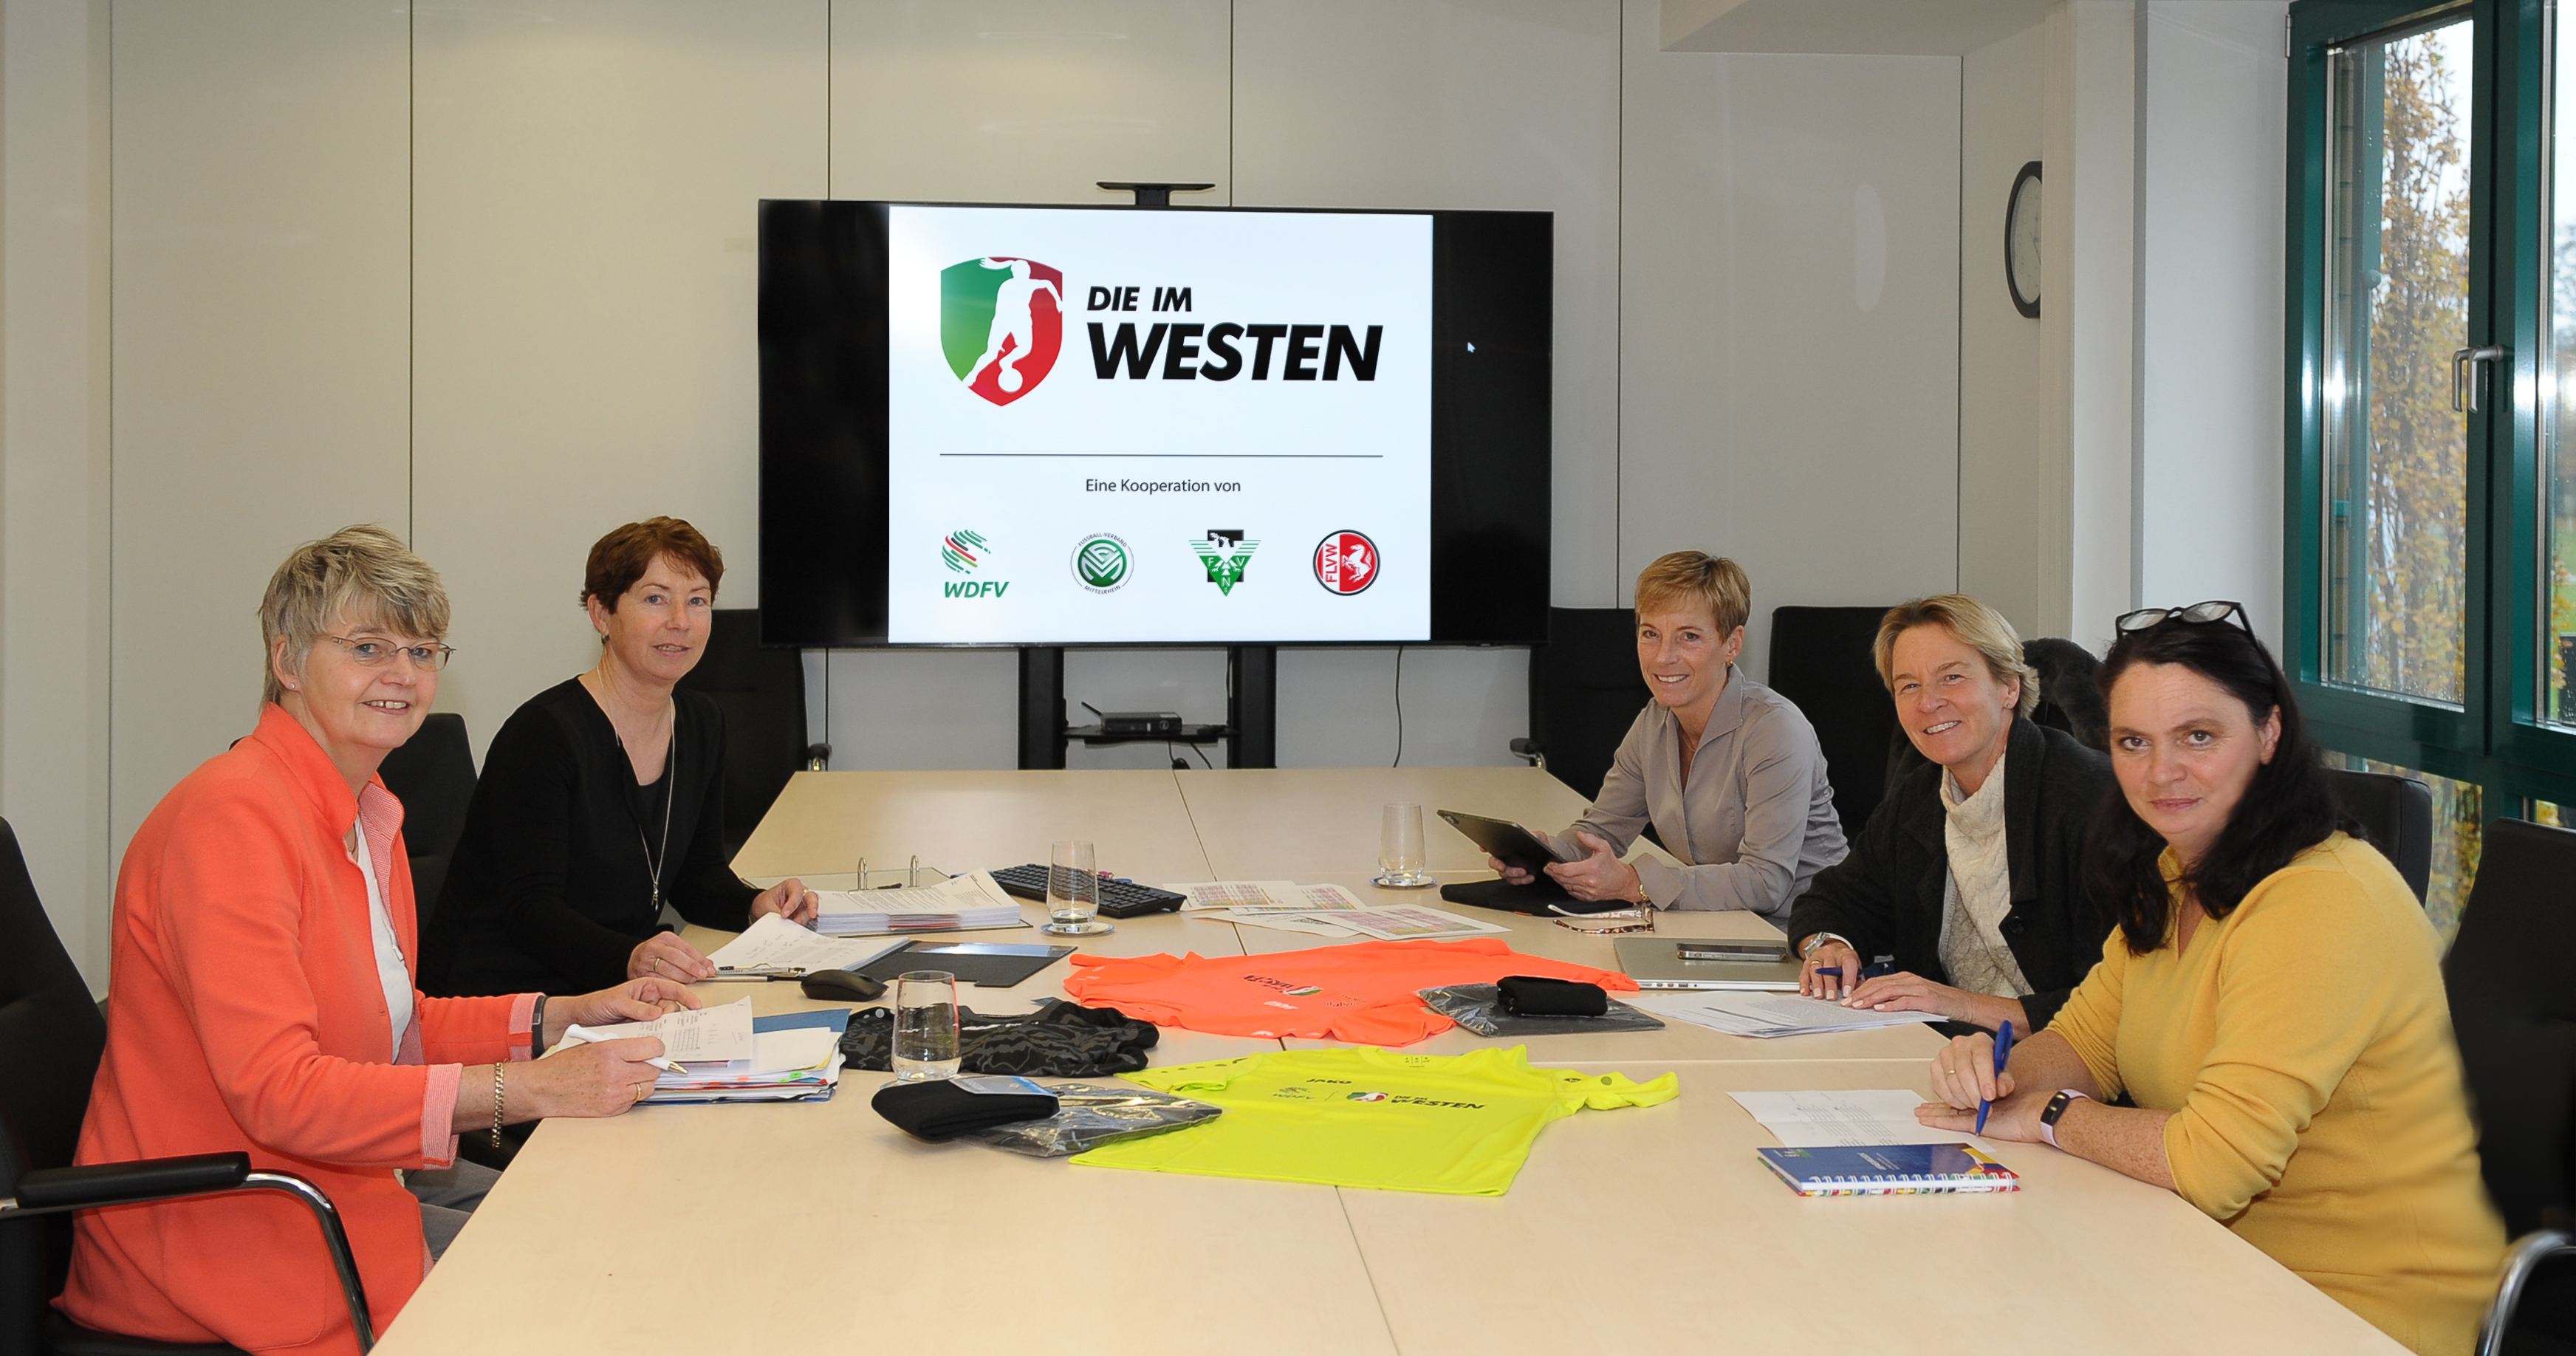 Beratung der WDFV-Fachjury zur Vereinsförderung 2022 (von links): Marianne Finke-Holtz, Maren Meinert, Eva Selic, Martina Voss-Tecklenburg, Tanja Büscher. Foto/Video: WDFV